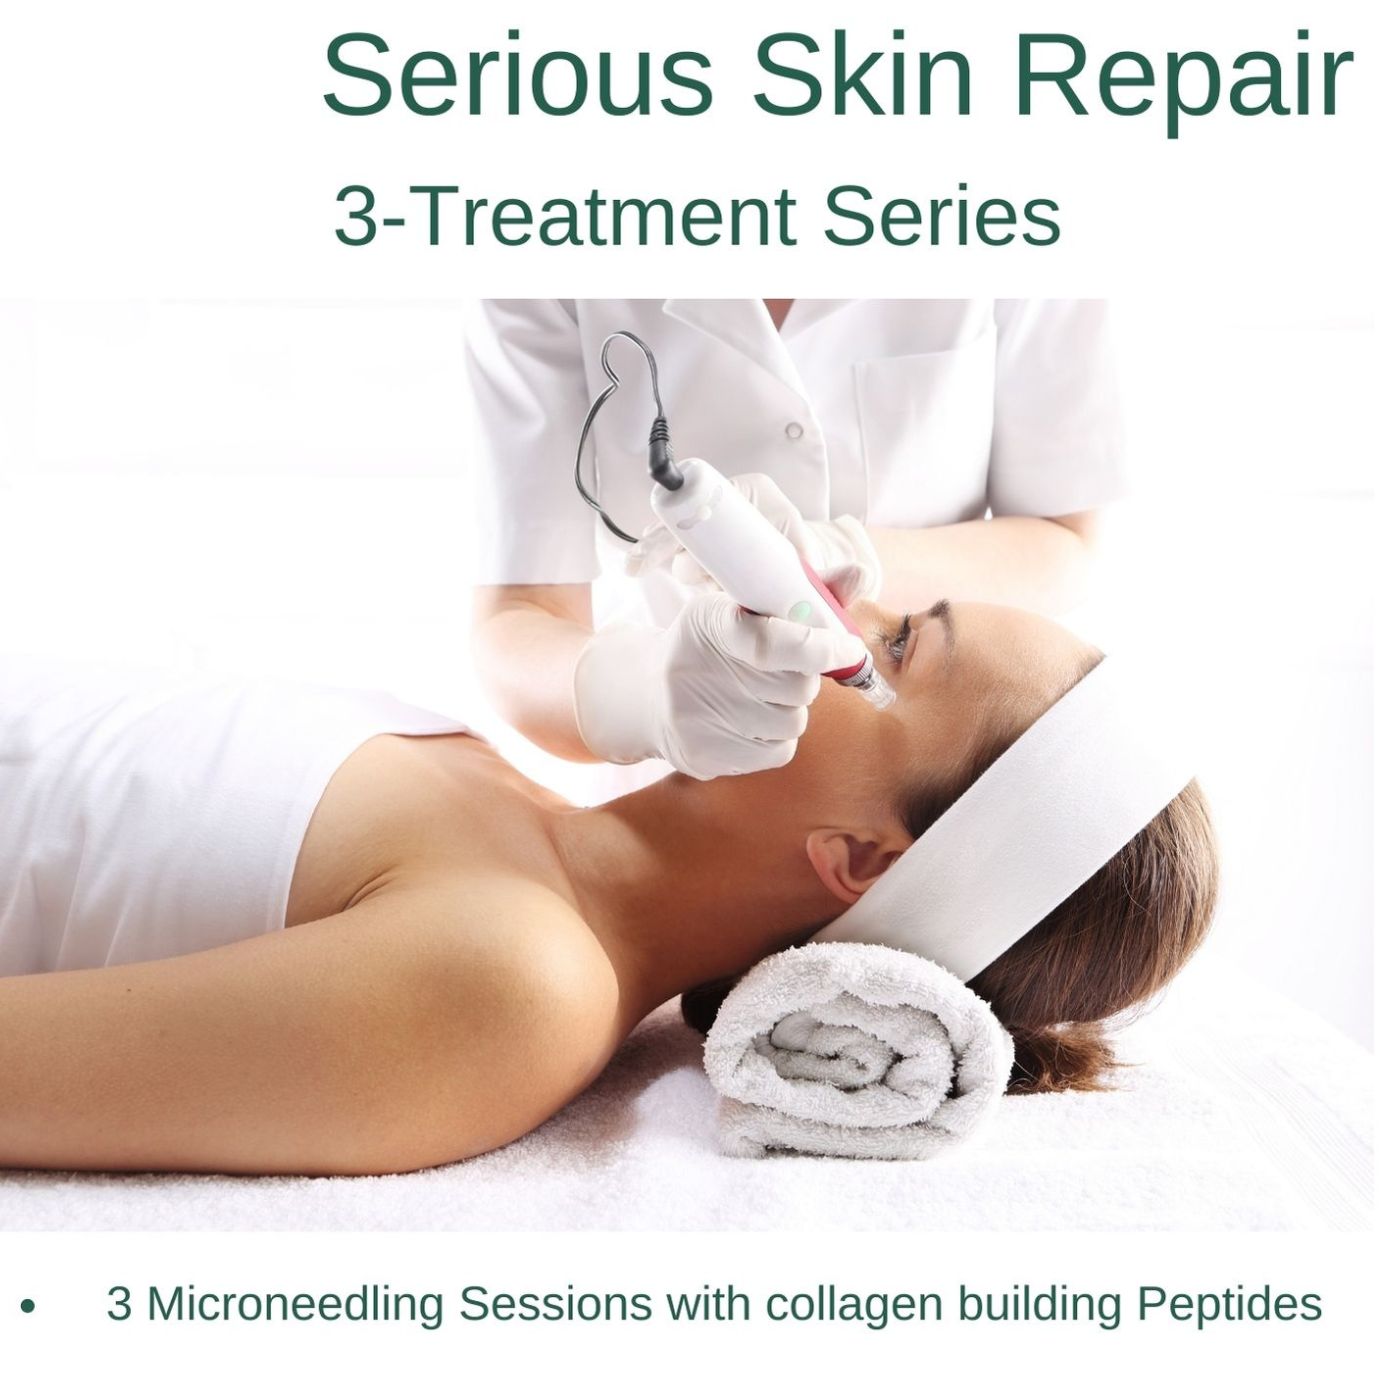 In-Spa Treatment: Serious Skin Repair